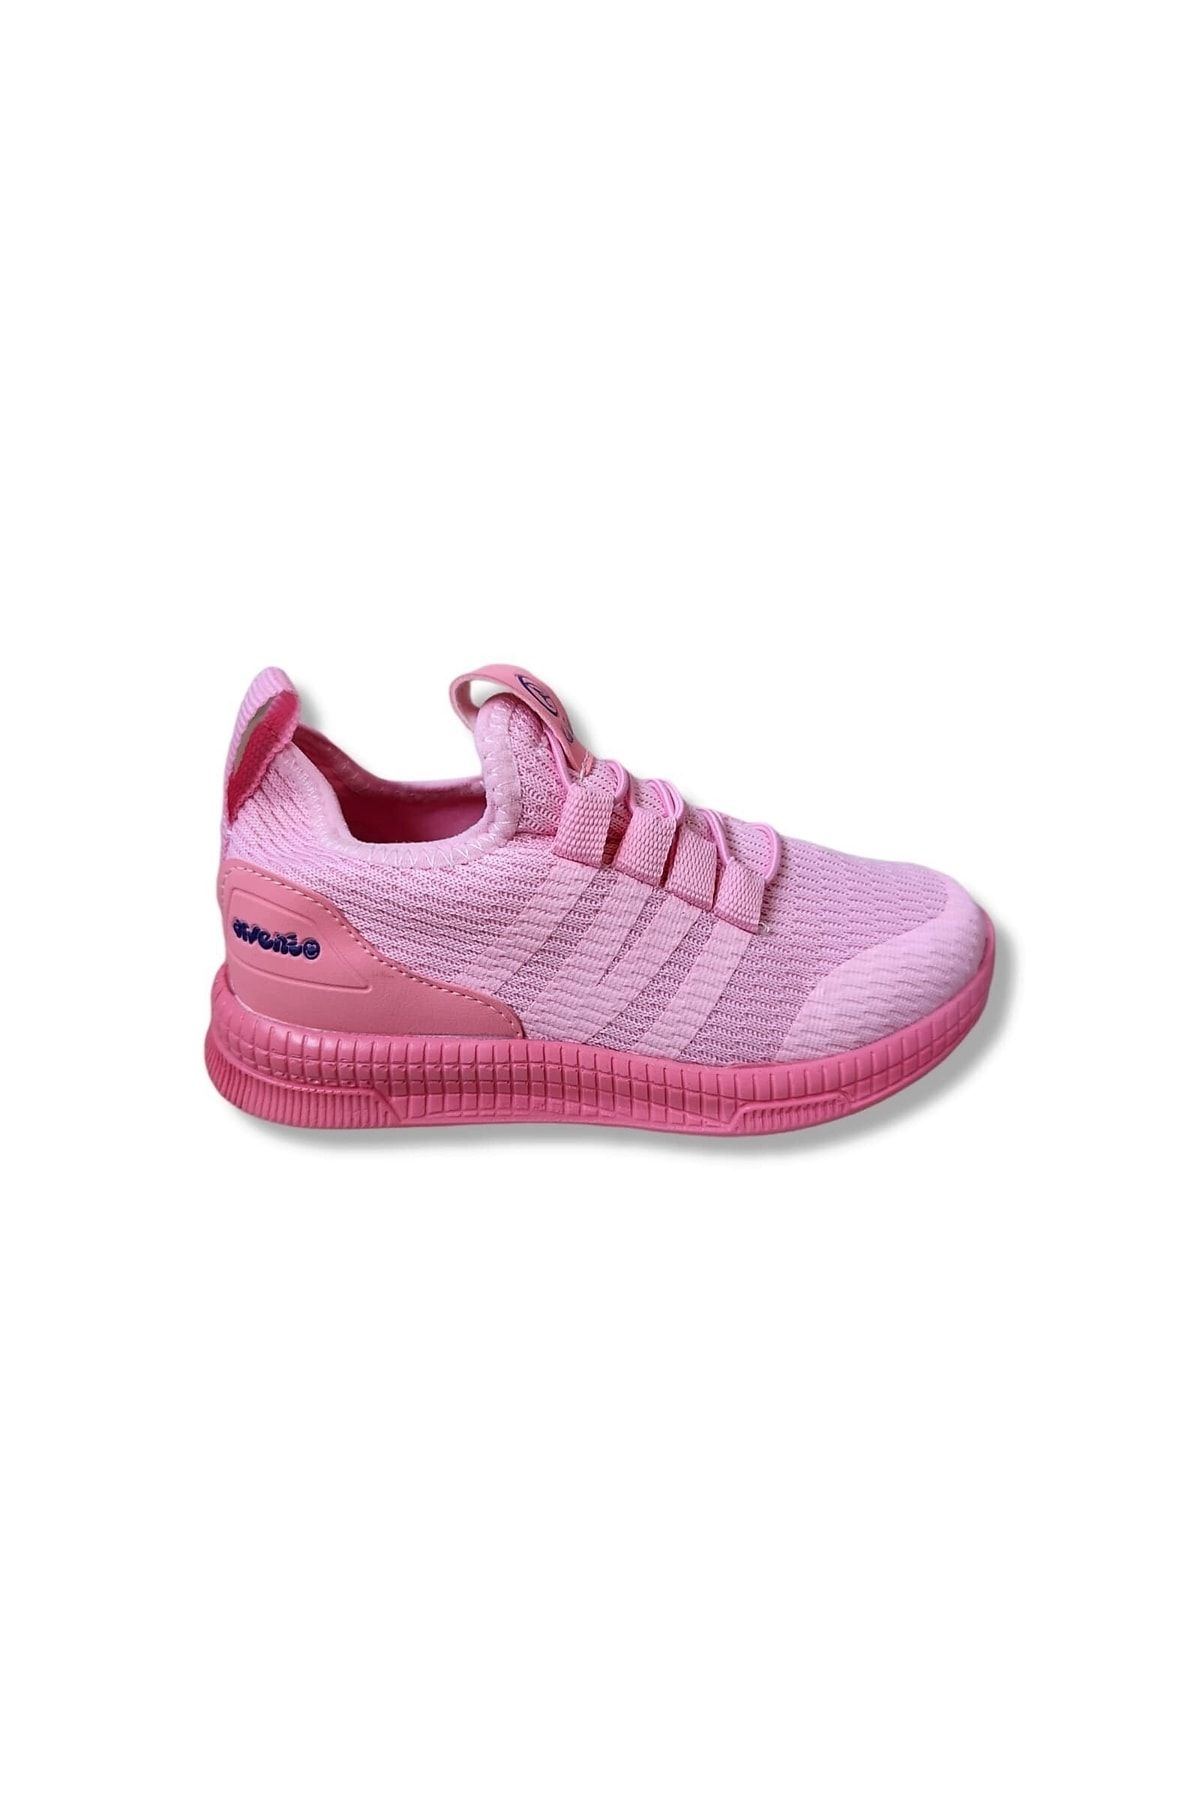 Arvento 05210 Ortopedik Kız Çocuk Spor Ayakkabı